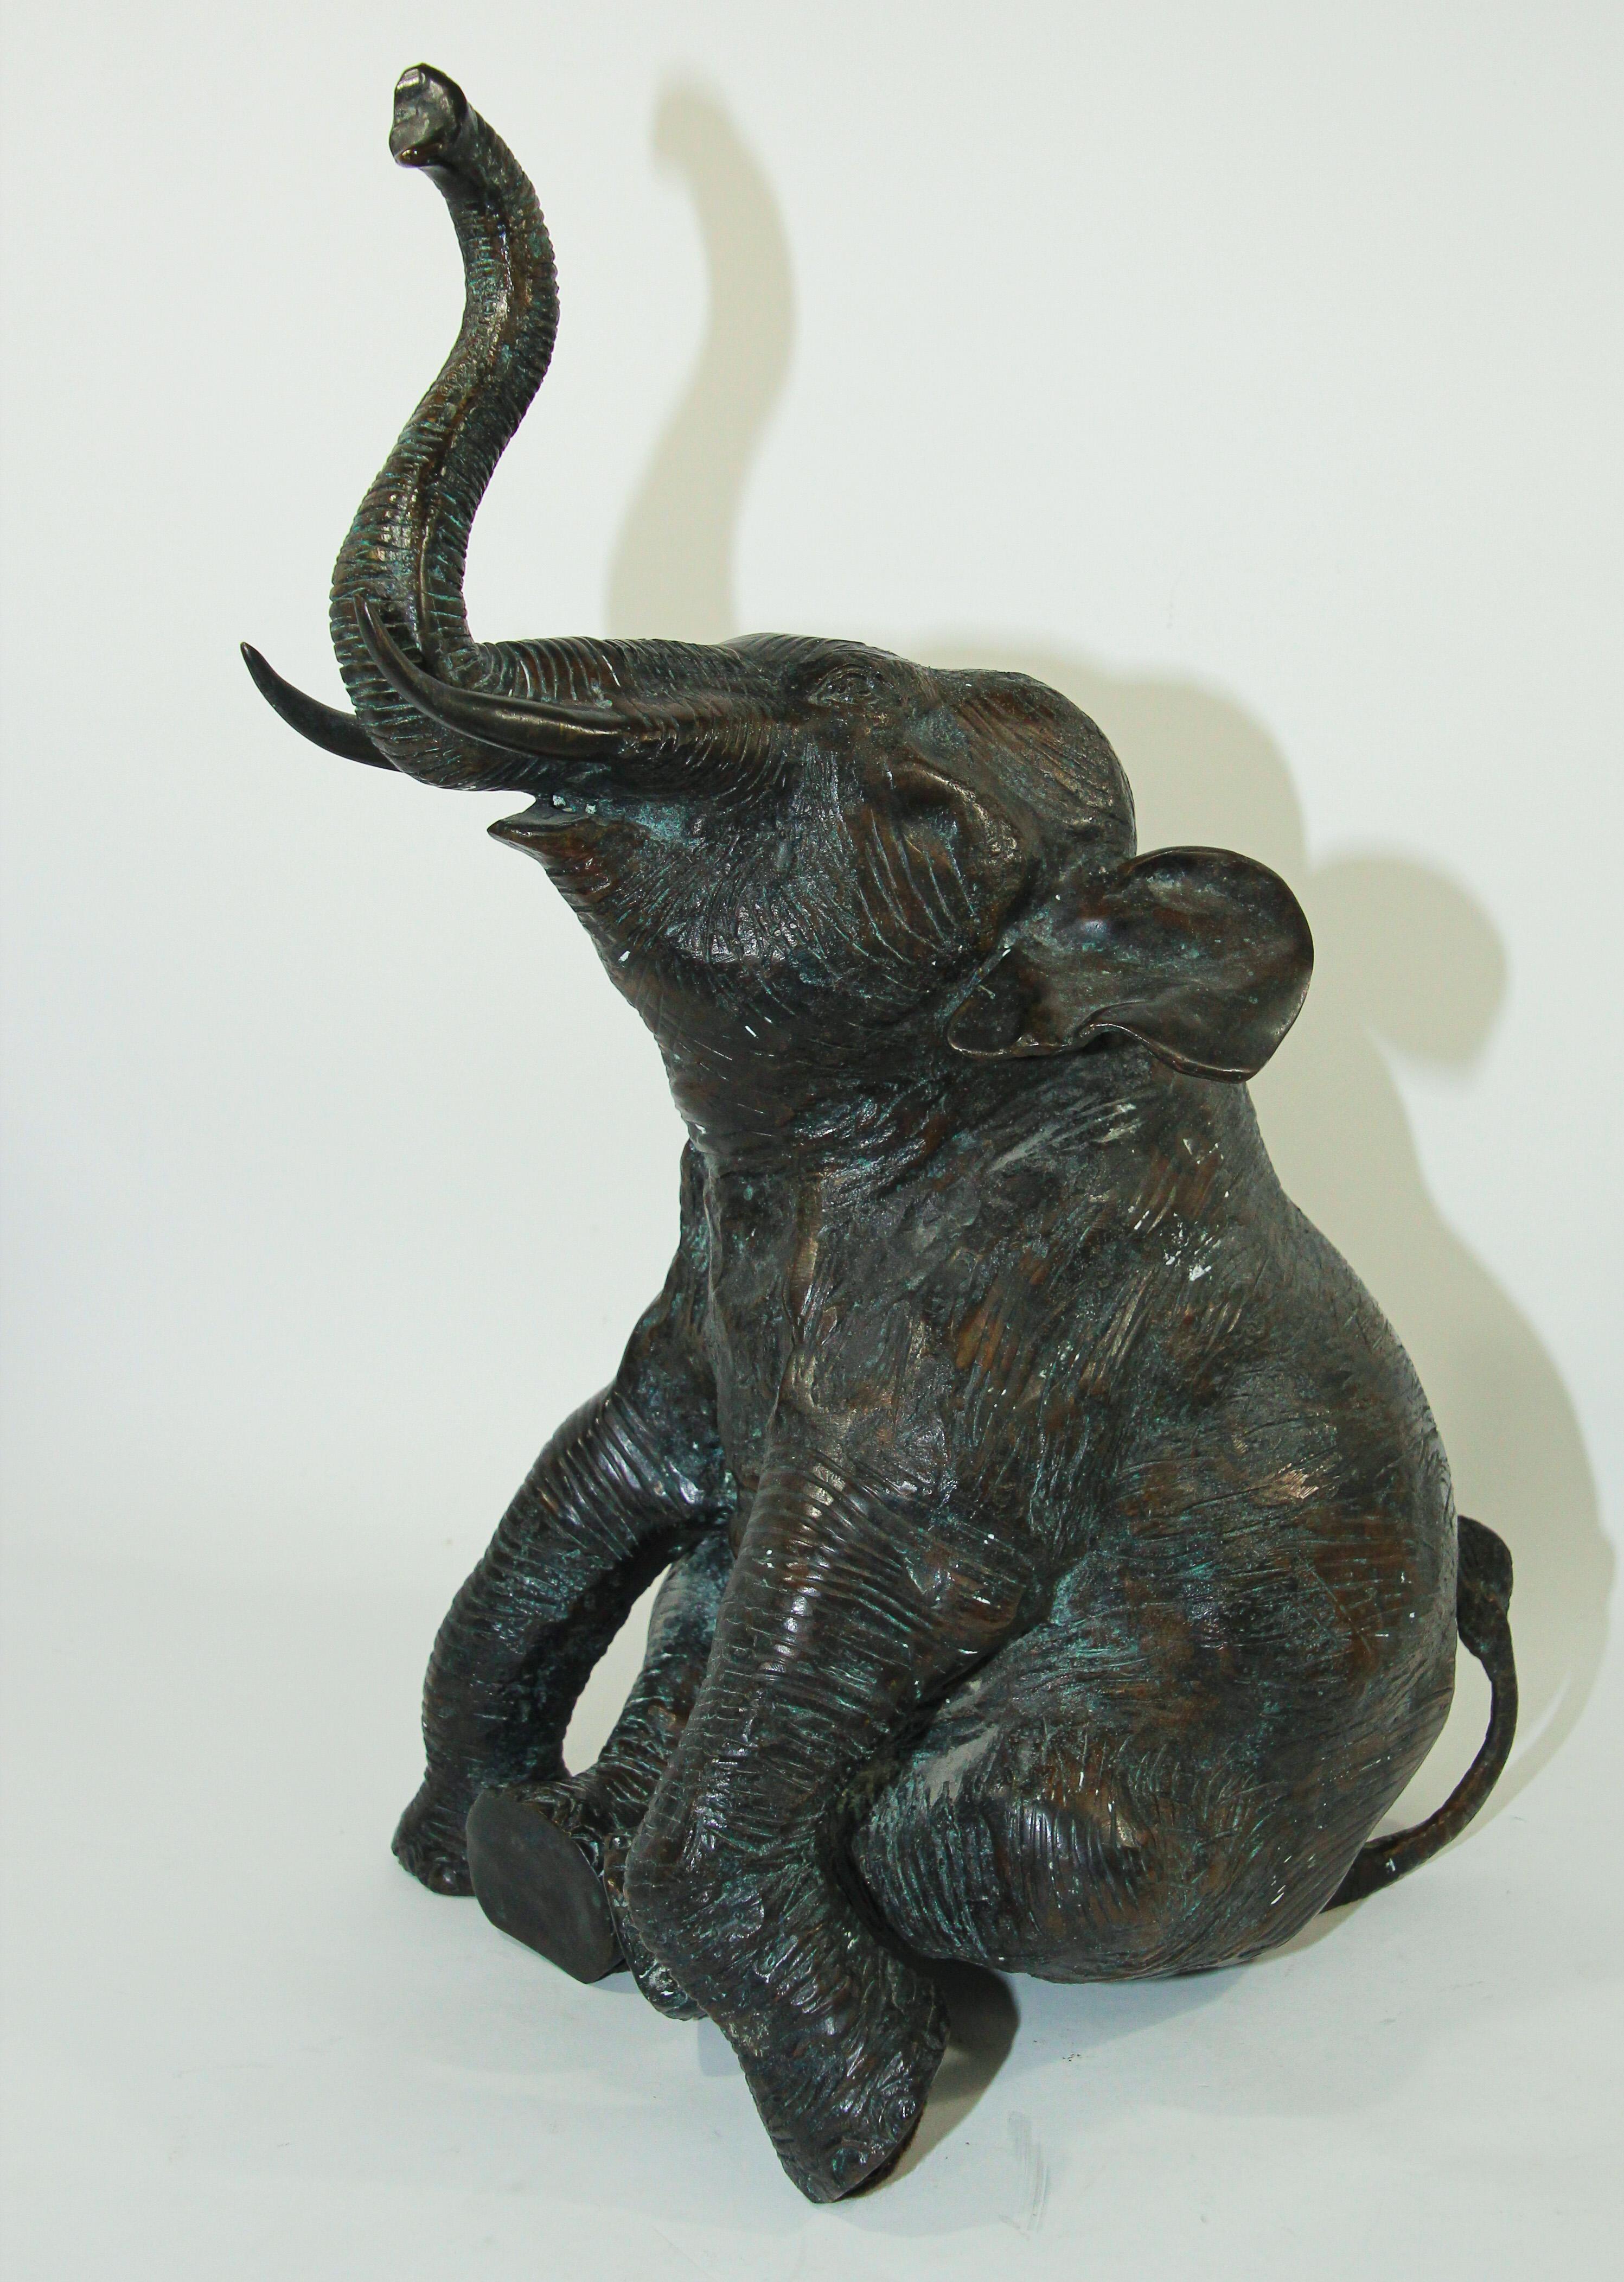 Grand éléphant assis en bronze métallique de style asiatique avec trompe relevée
Statue d'éléphant en bronze sculpture en métal moulé Art.
Éléphant en laiton moulé, finition vert-de-gris
Les éléphants apportent chance et bonne santé avec la